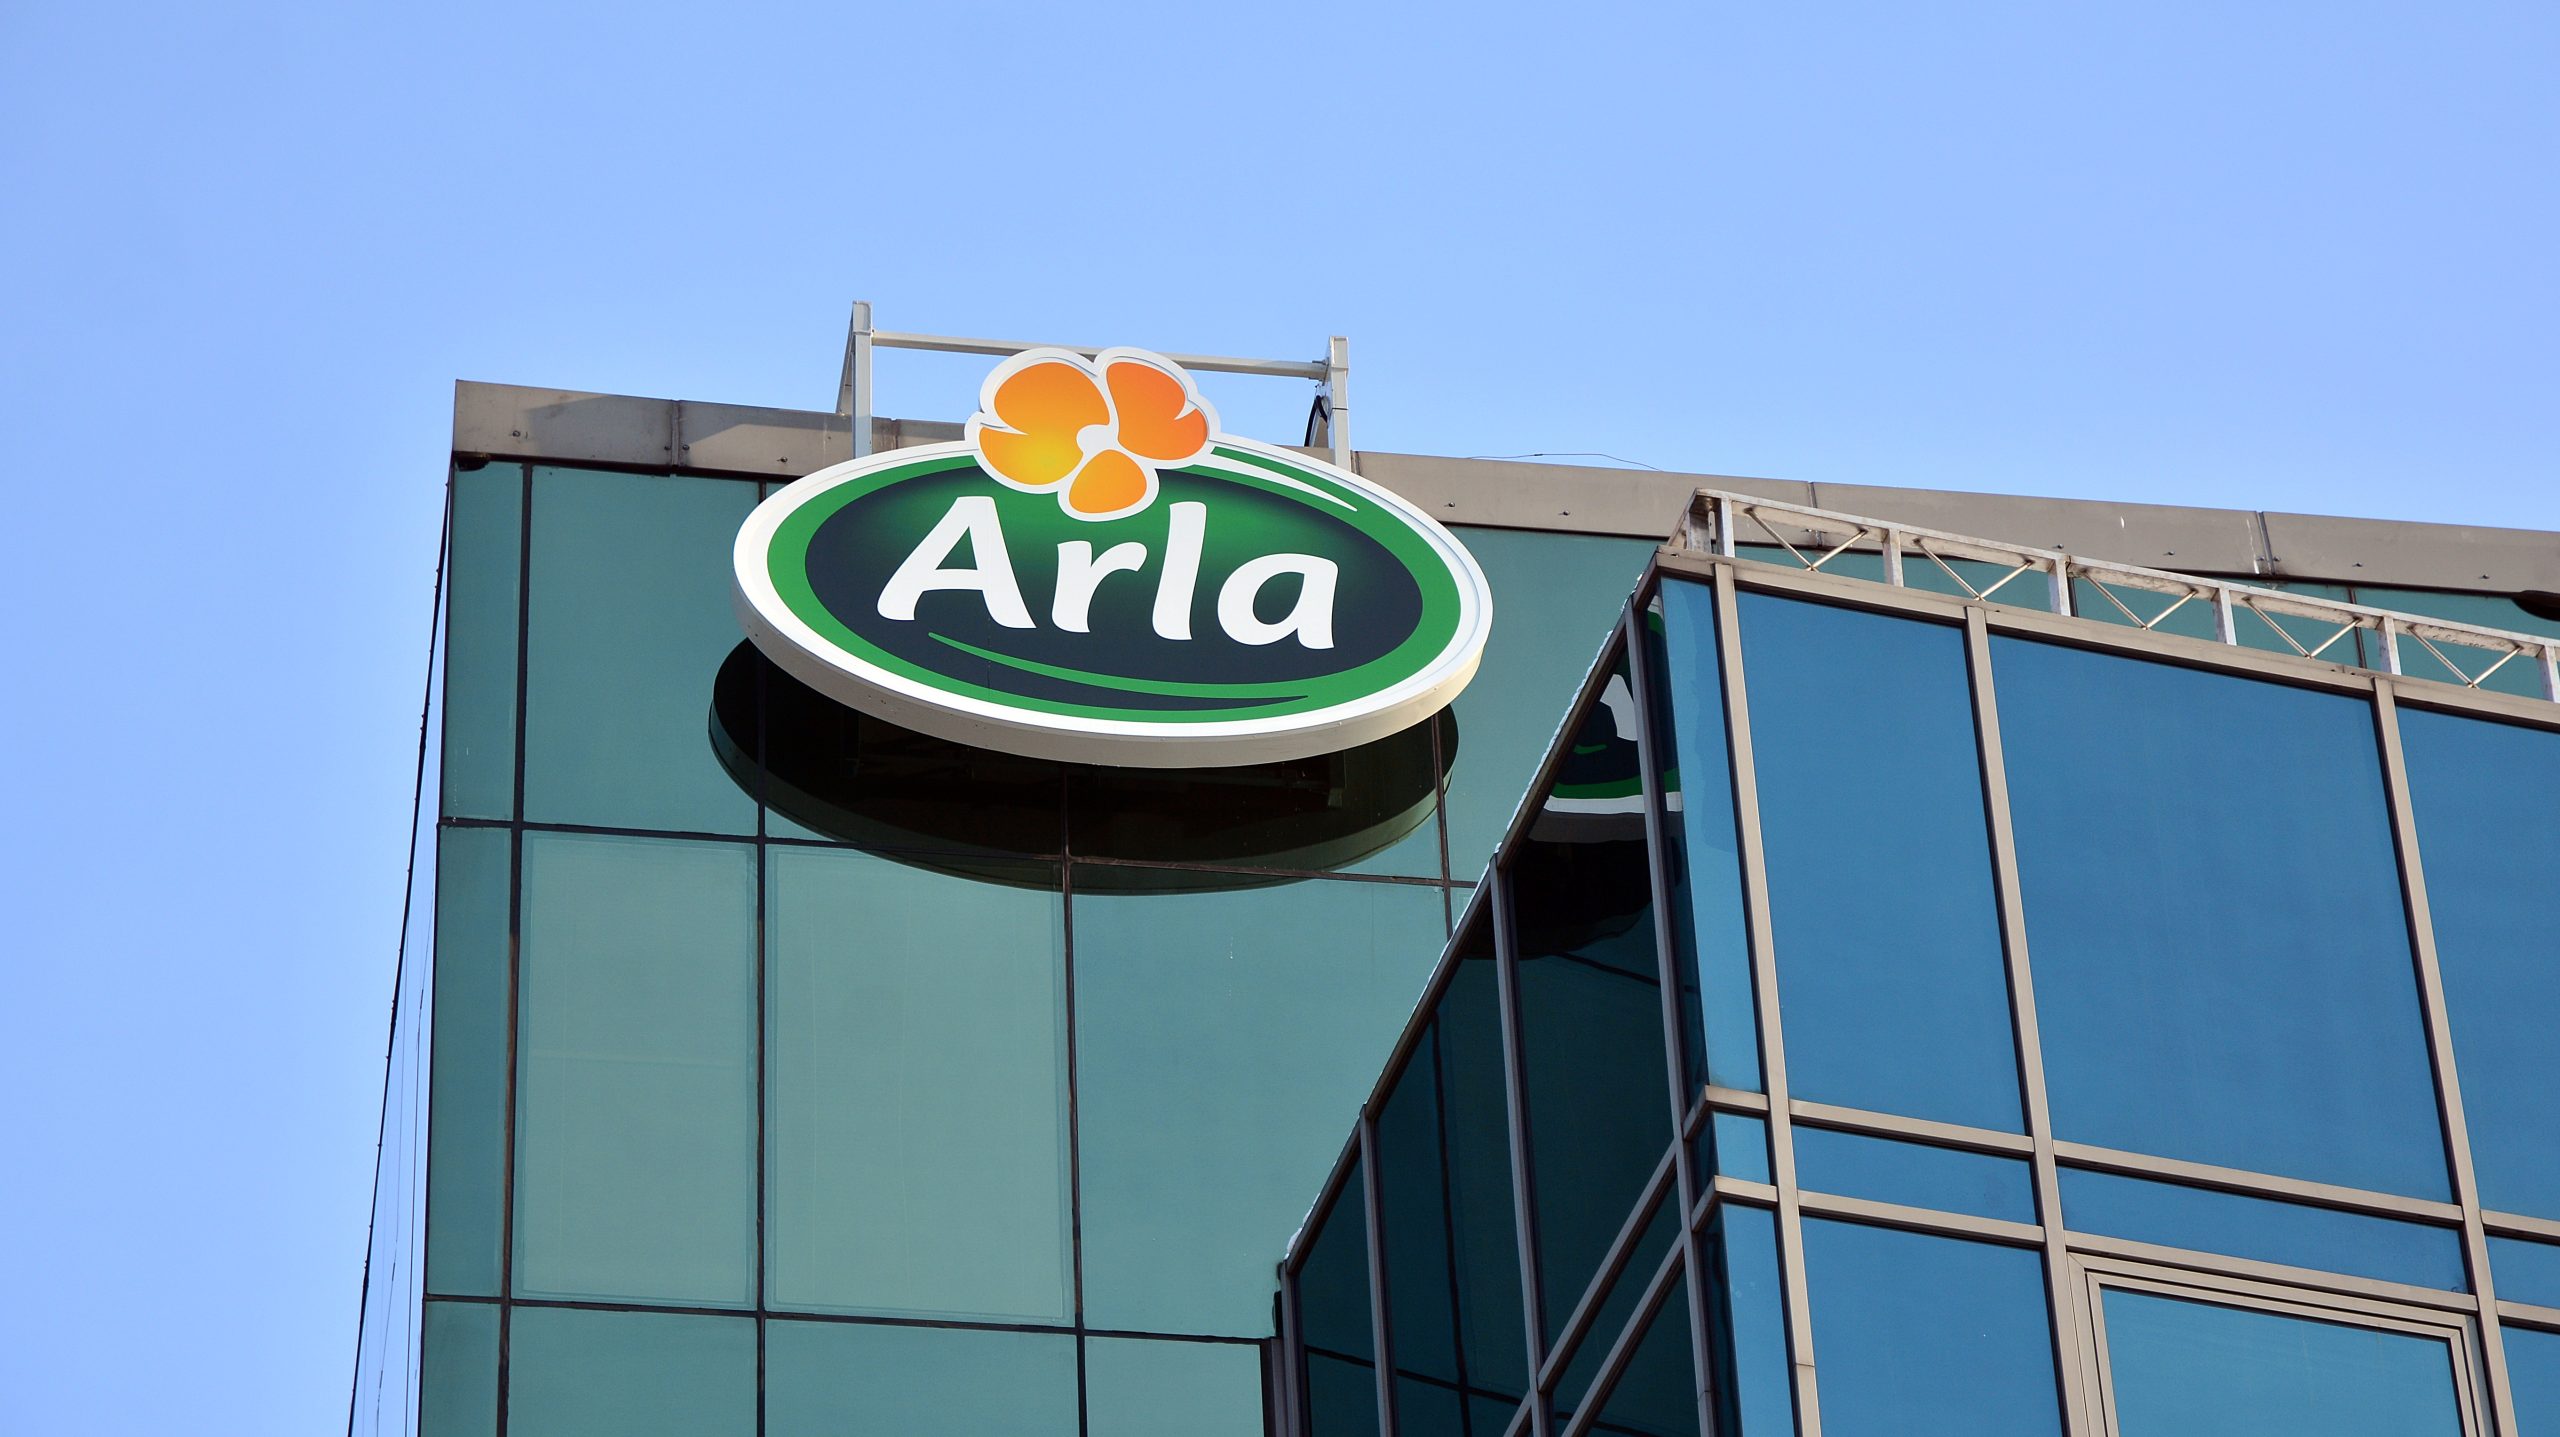 Arla head office